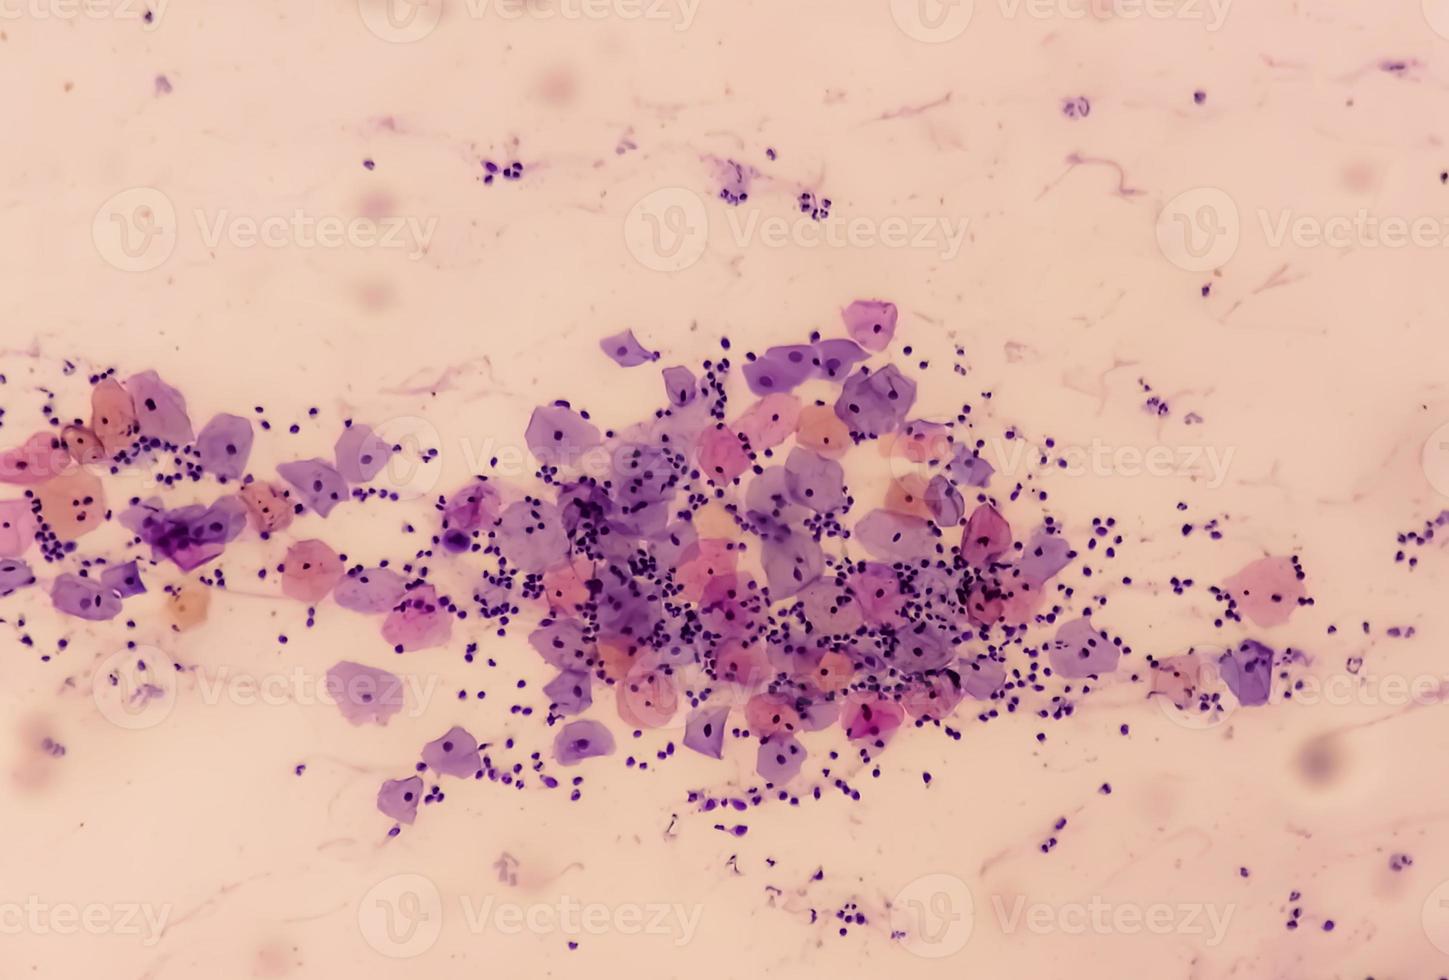 vista microscópica de la prueba de Papanicolaou que muestra un negativo grave para la malignidad de la lesión intraepitelial o nilm. diagnóstico de cáncer de cuello uterino. foto